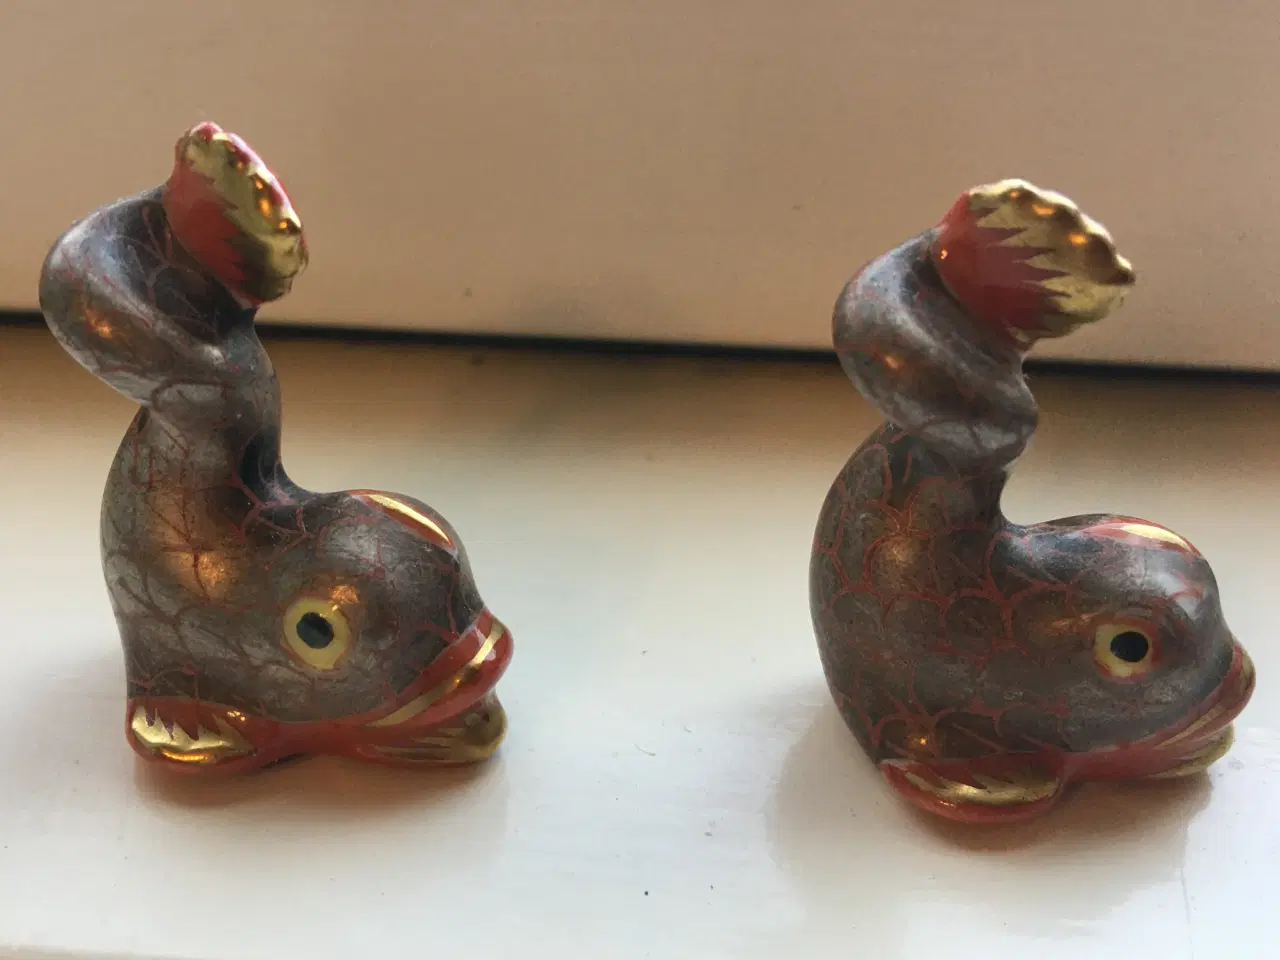 Billede 1 - To små fisk. Porcelæns figurer fra Ungarn